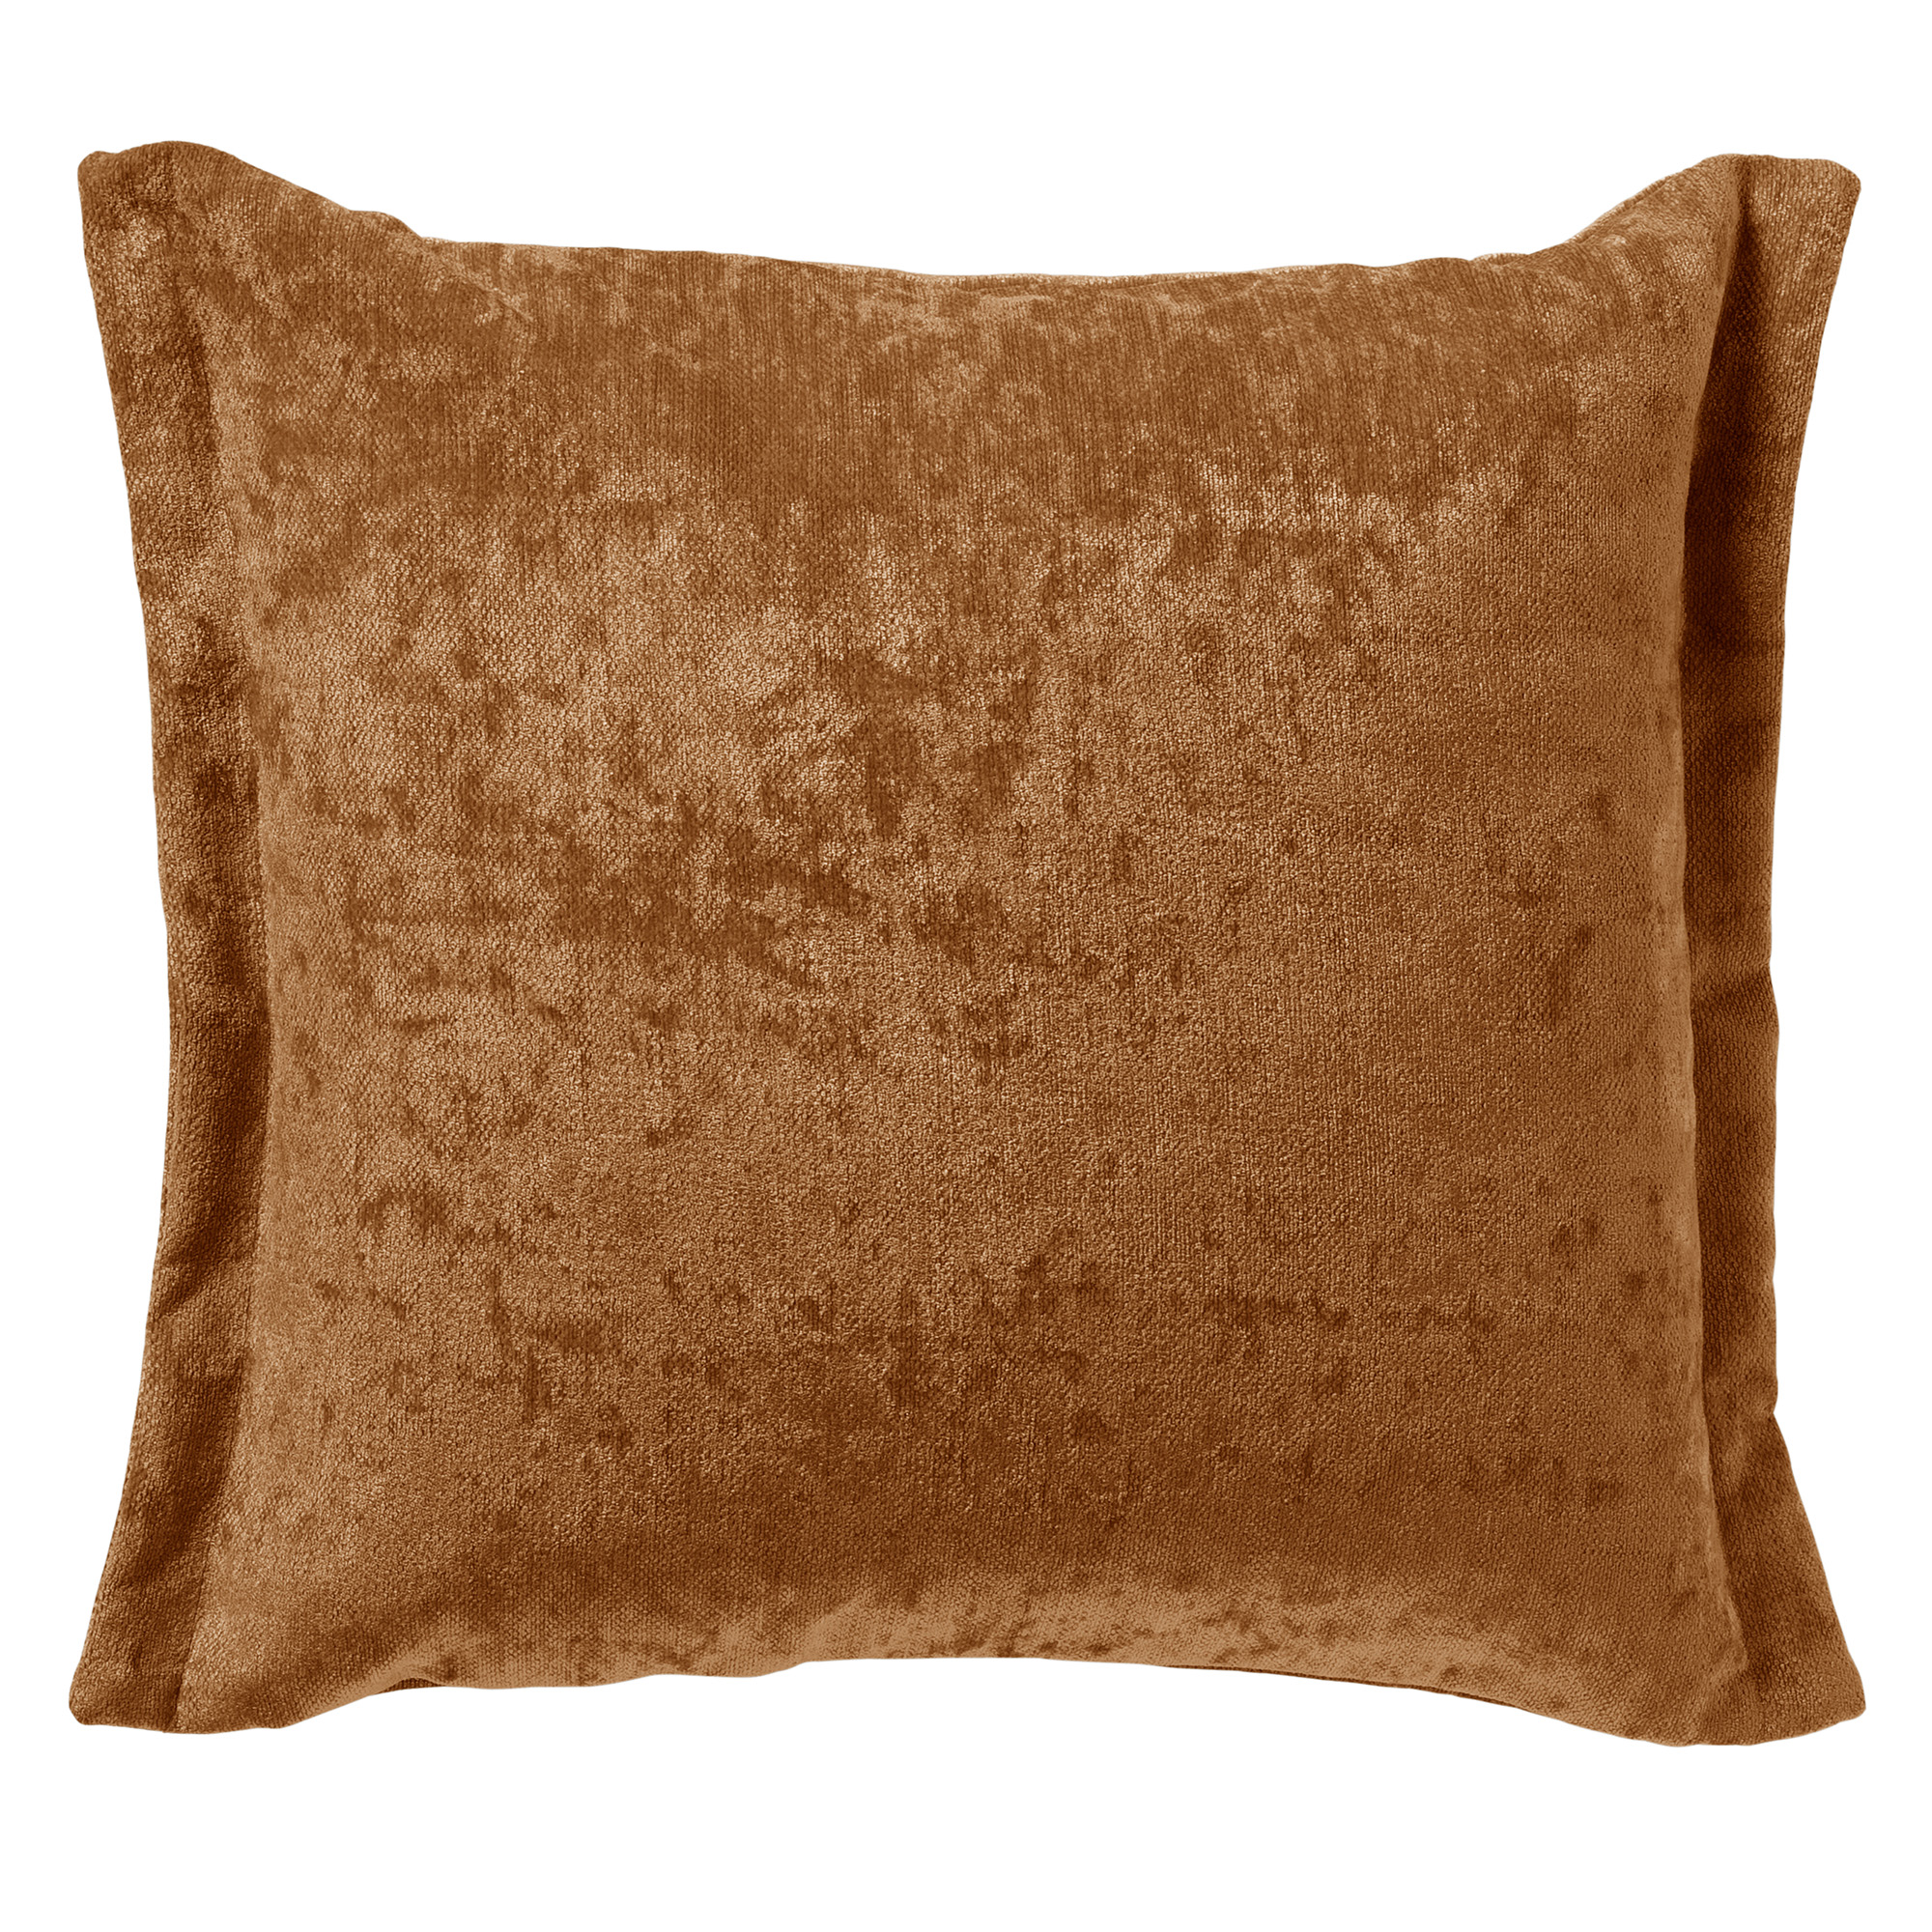 LEWIS - Cushion 45x45 cm - Tobacco Brown - brown